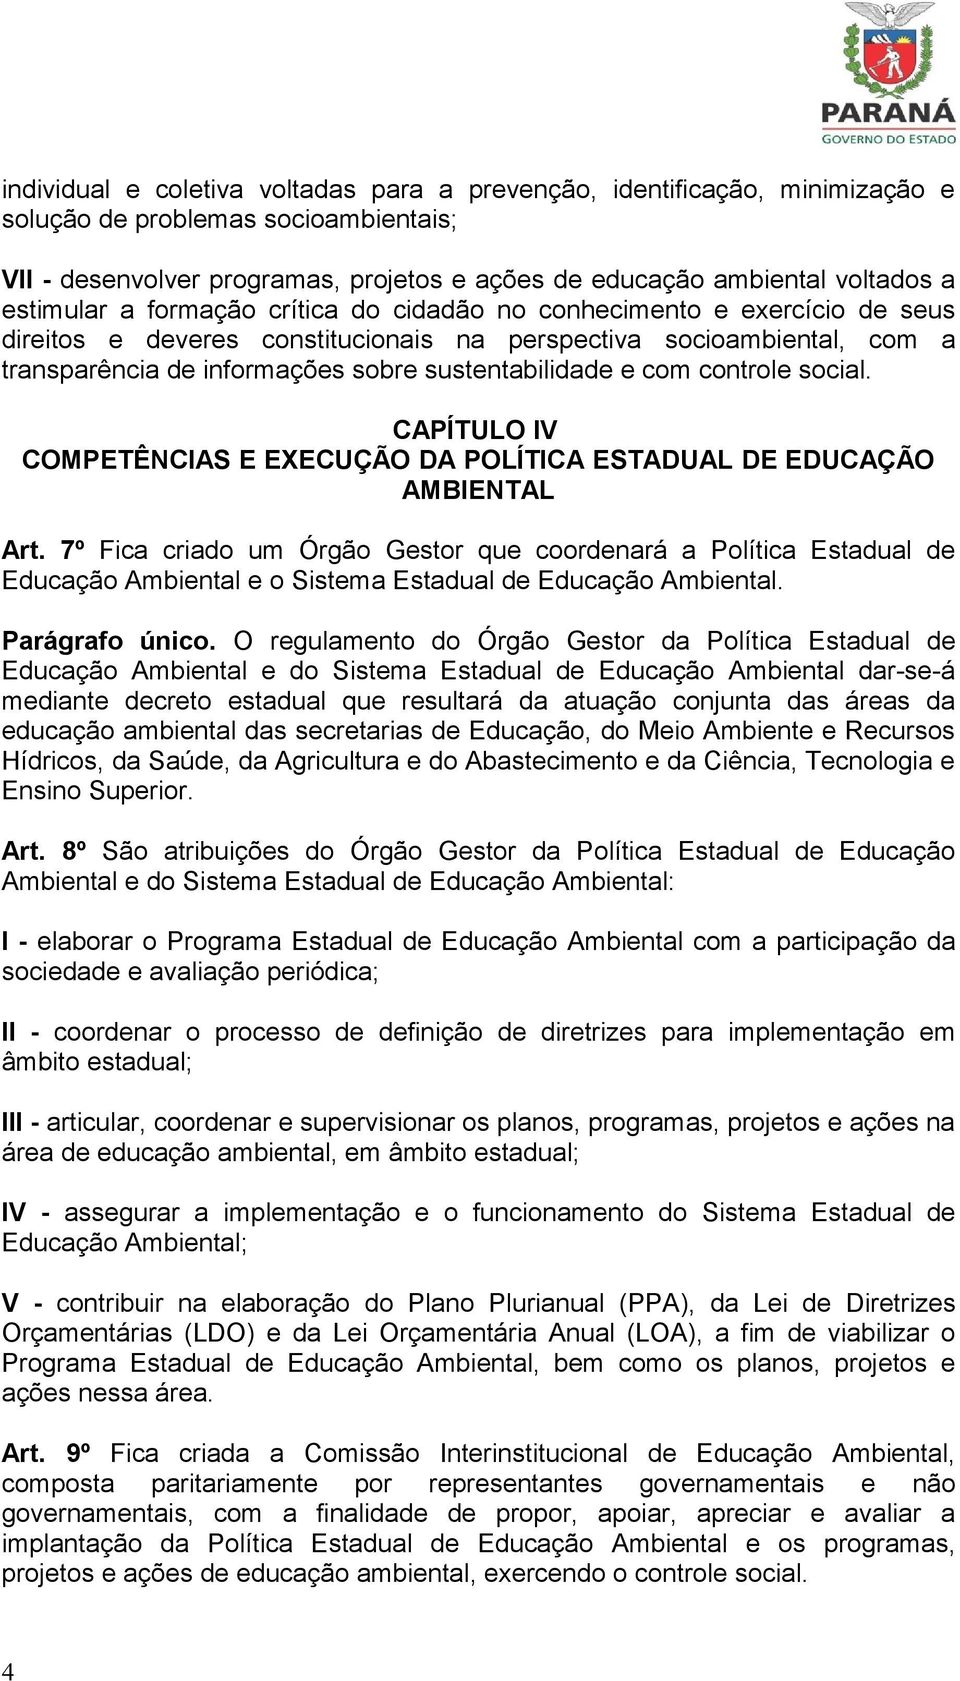 e com controle social. CAPÍTULO IV COMPETÊNCIAS E EXECUÇÃO DA POLÍTICA ESTADUAL DE EDUCAÇÃO AMBIENTAL Art.